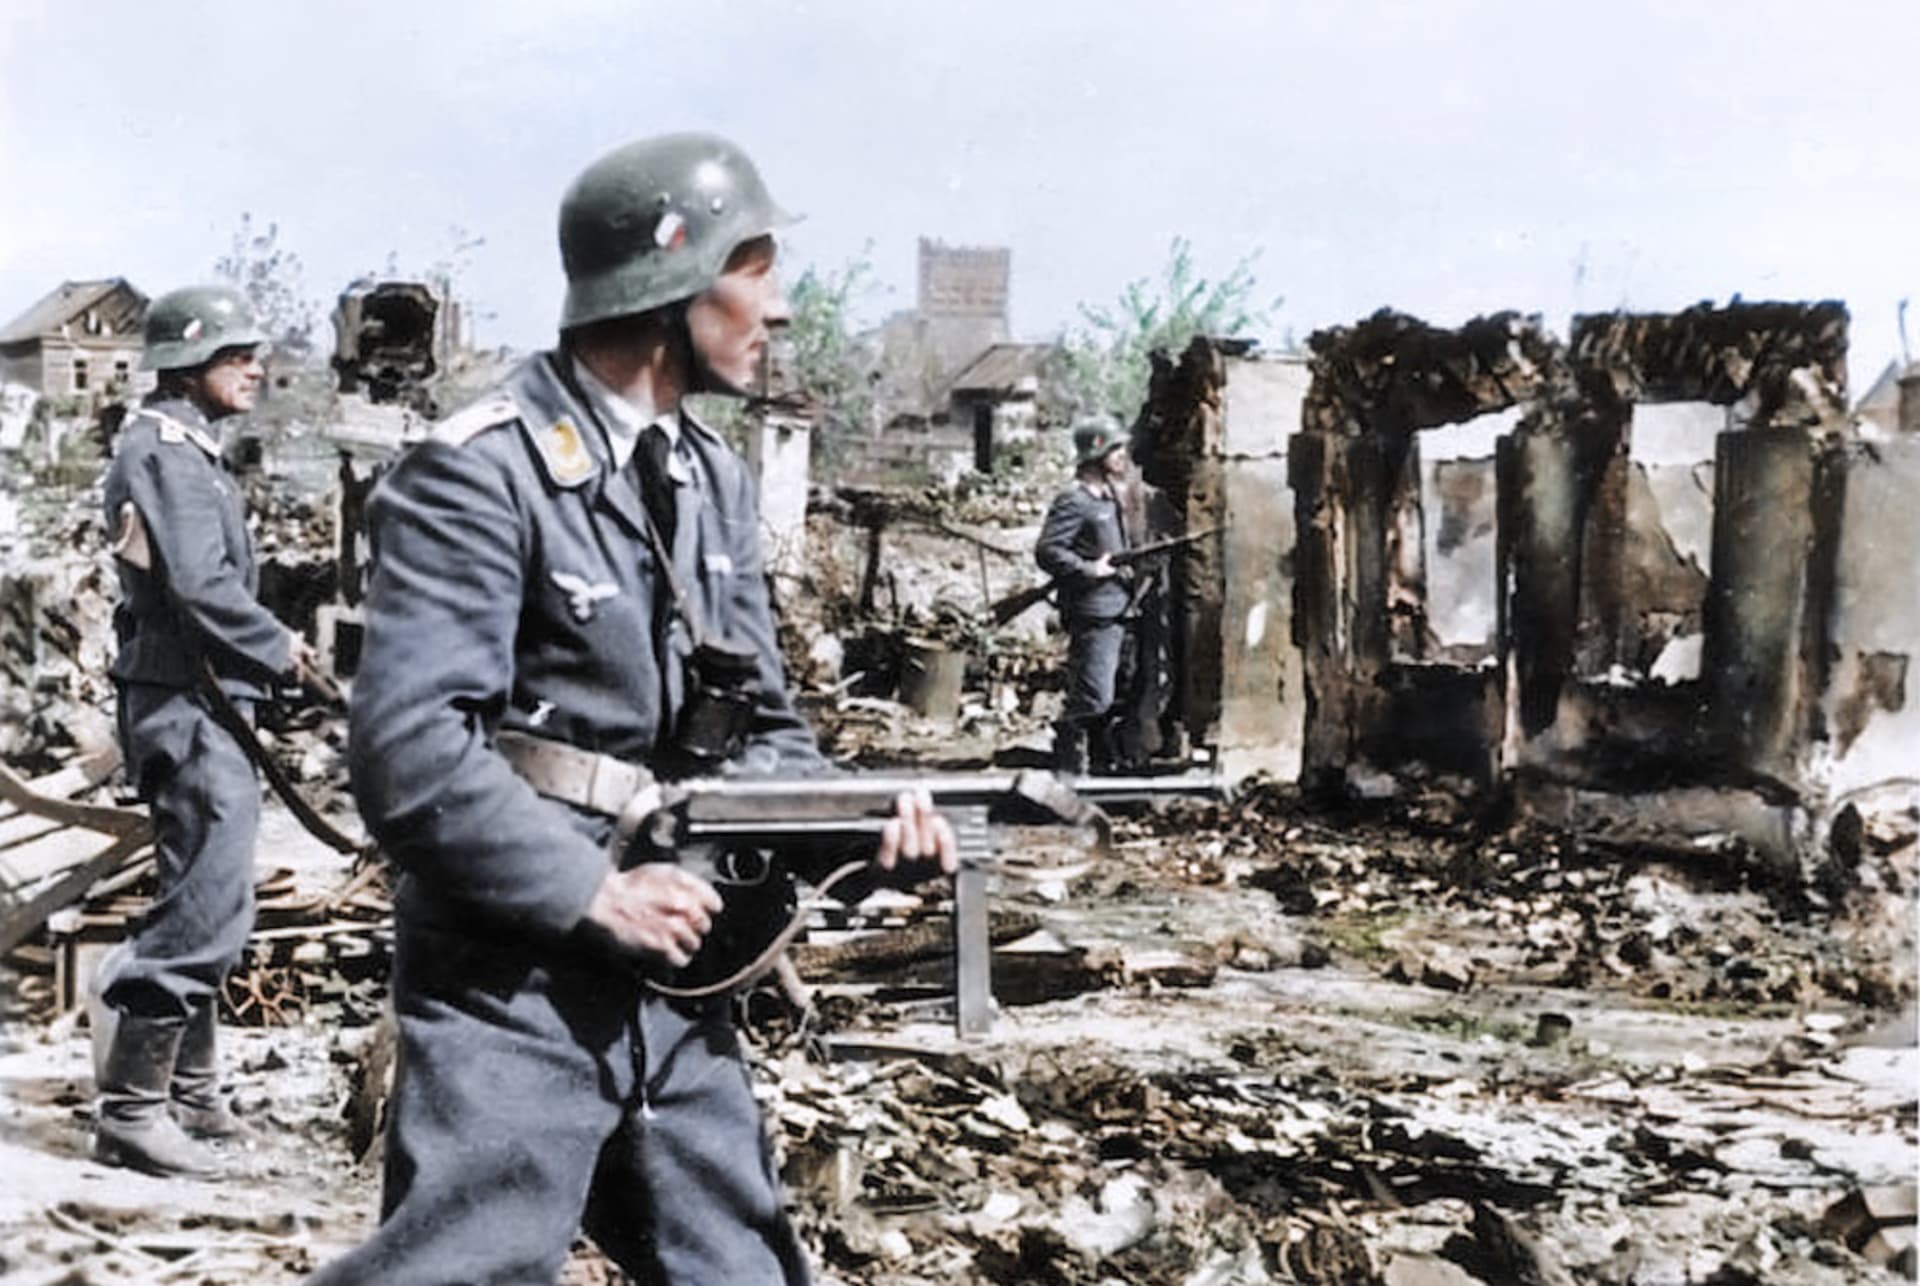 Opatrný postup německé pěchoty